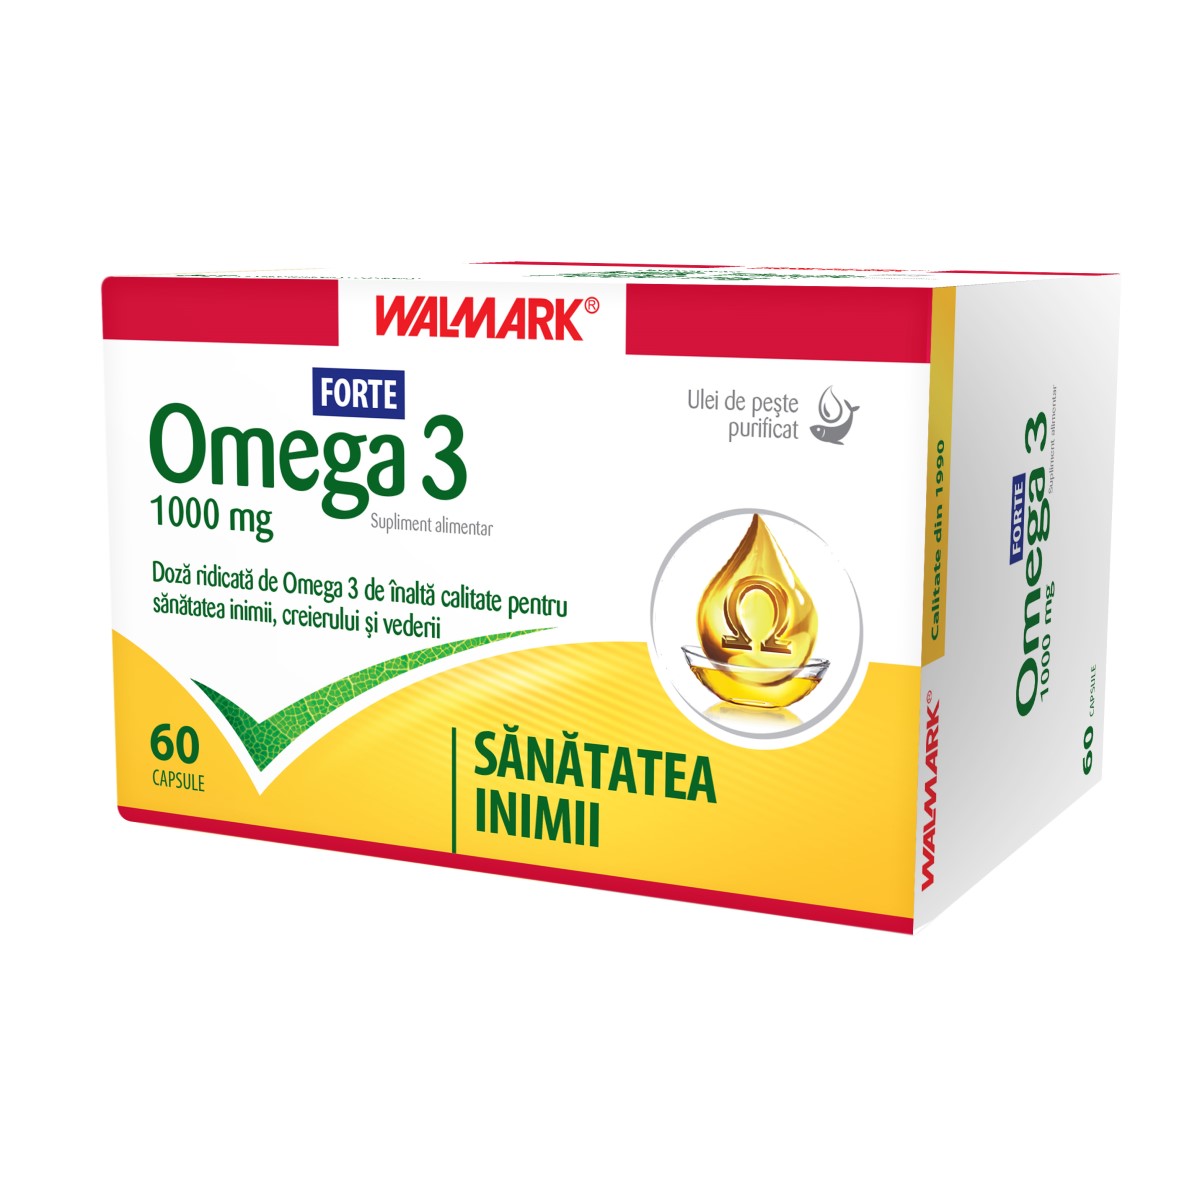 Omega 3 Forte, 1000 mg, 60 capsule, Walmark